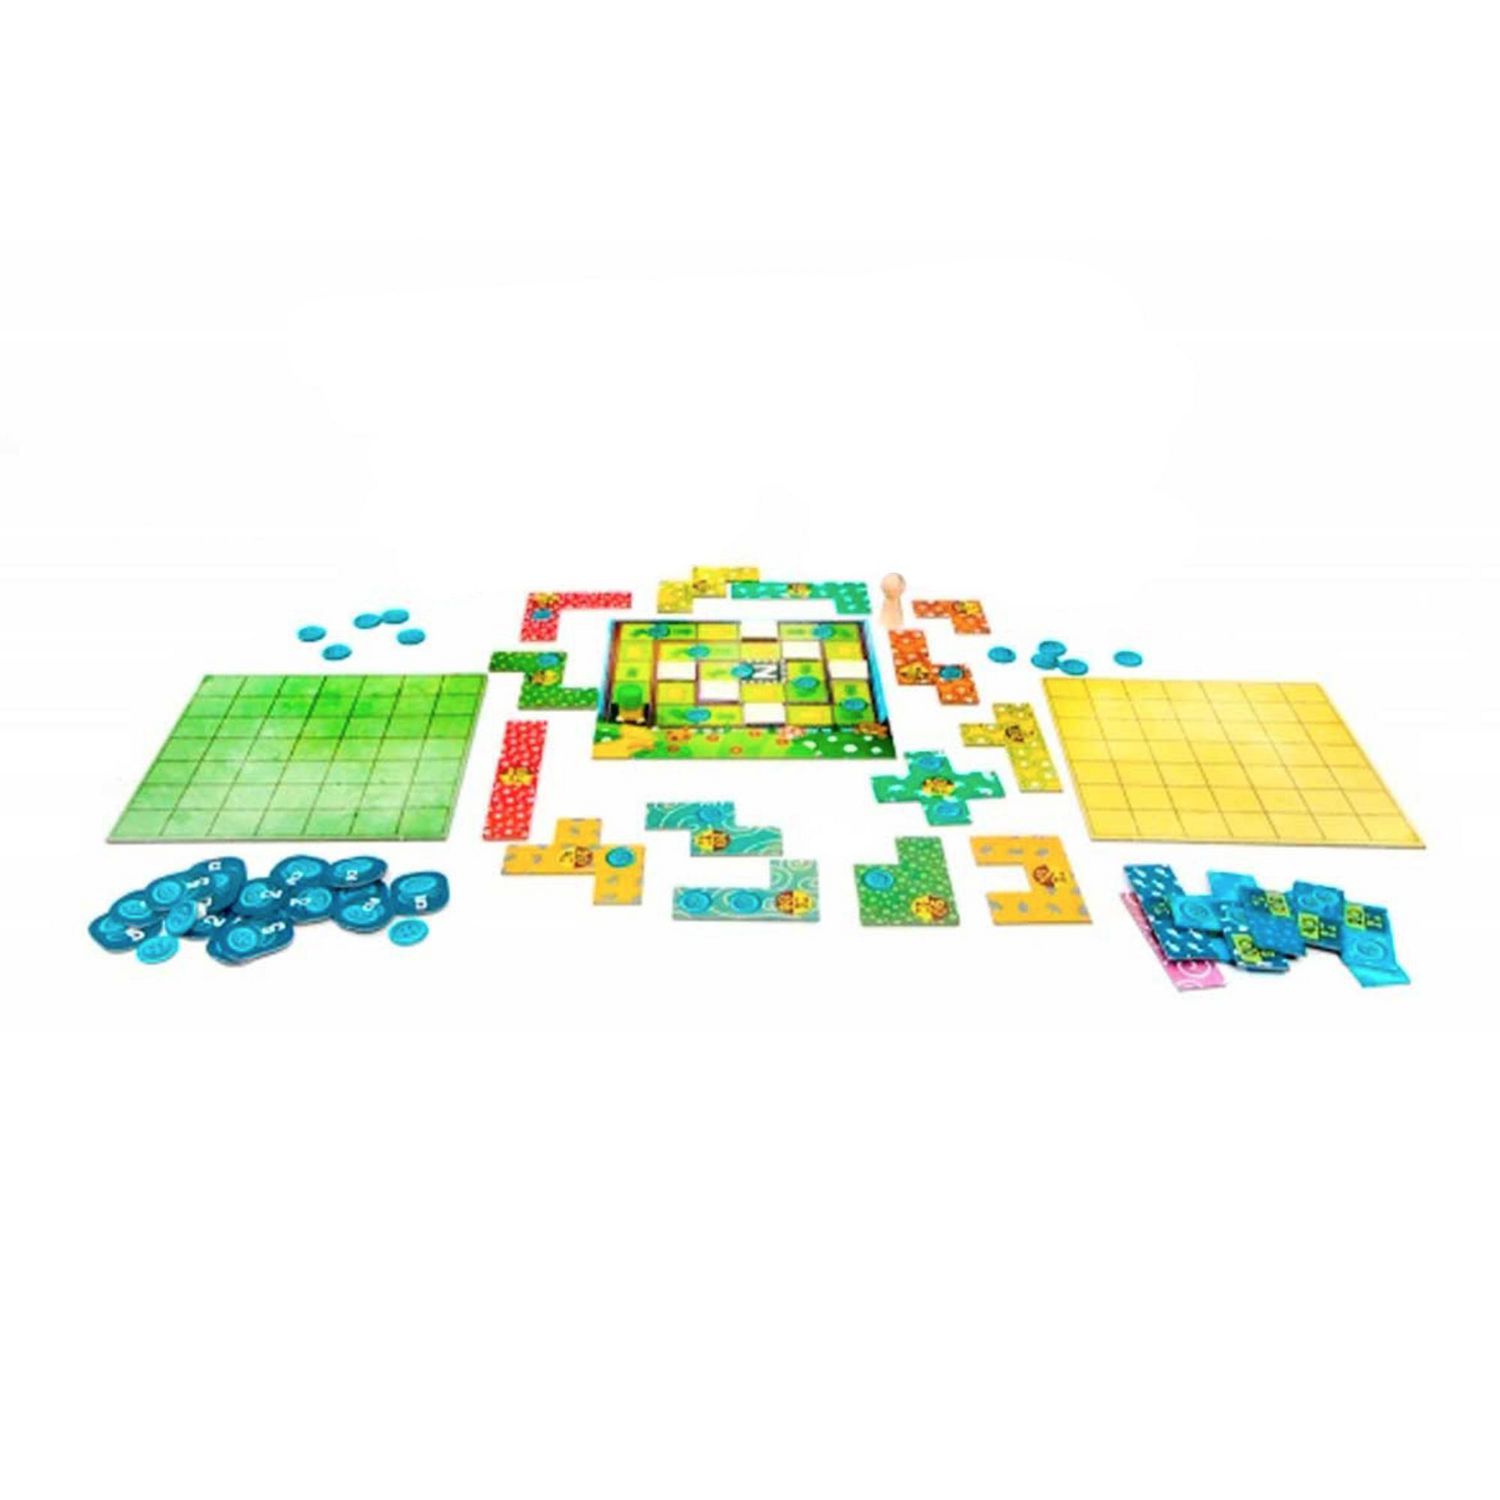 Ensemble 4 jeux de famille : Monopoly, Scrabble Junior, Bingo et cartes UNO  